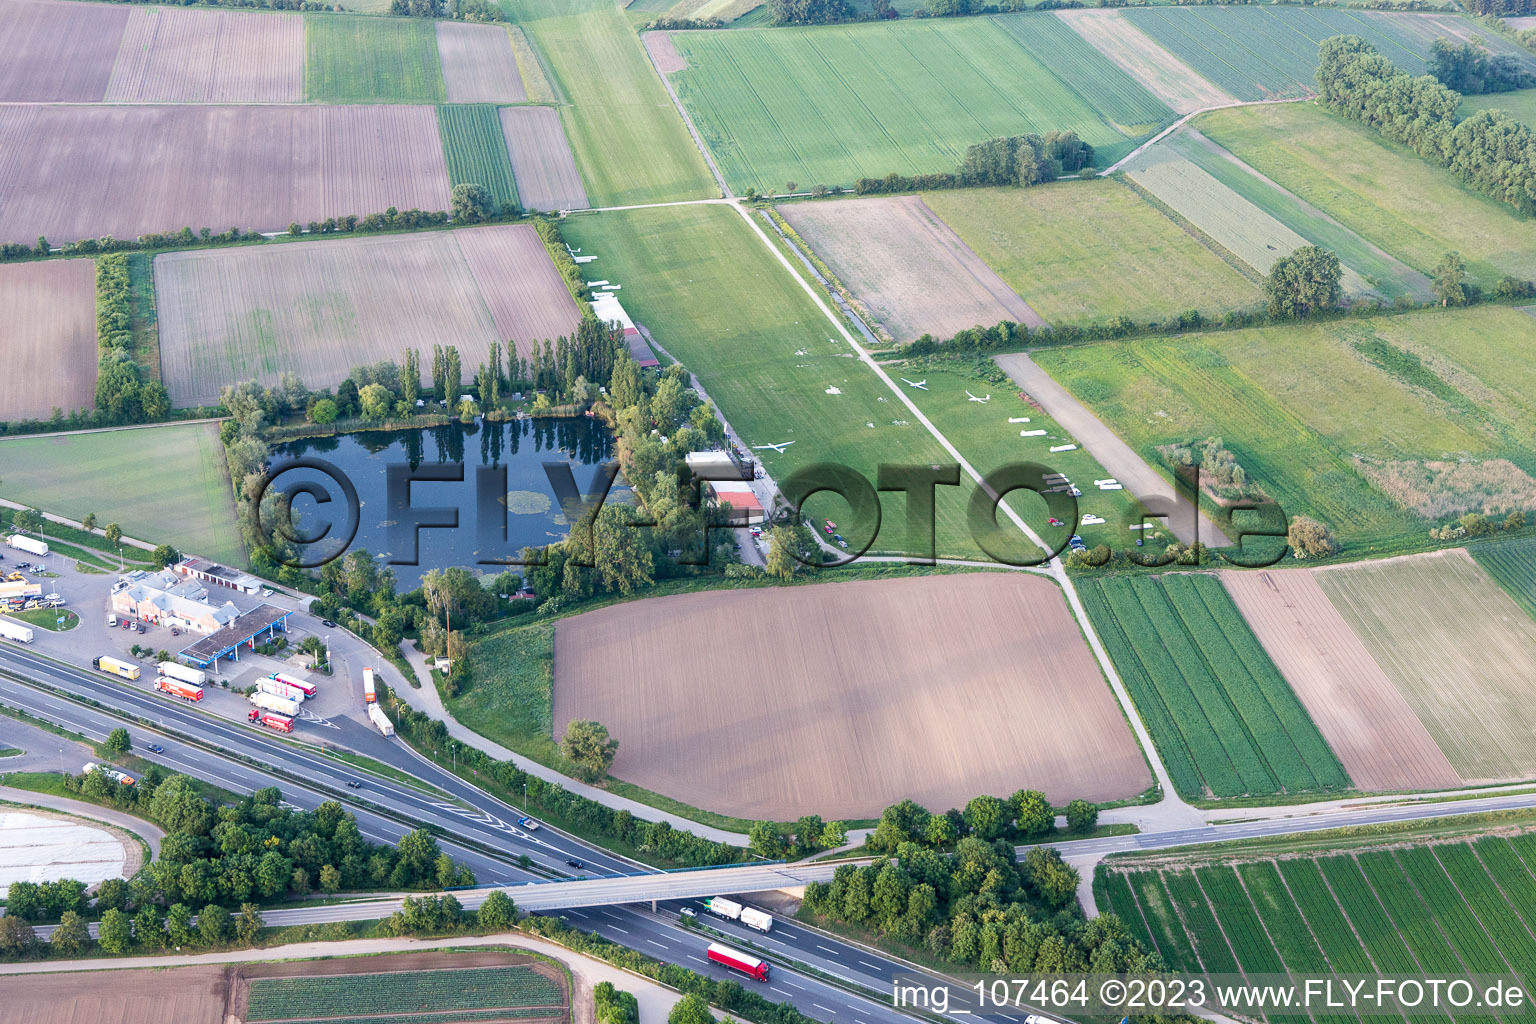 Vue aérienne de Aire de glisse à le quartier Dannstadt in Dannstadt-Schauernheim dans le département Rhénanie-Palatinat, Allemagne